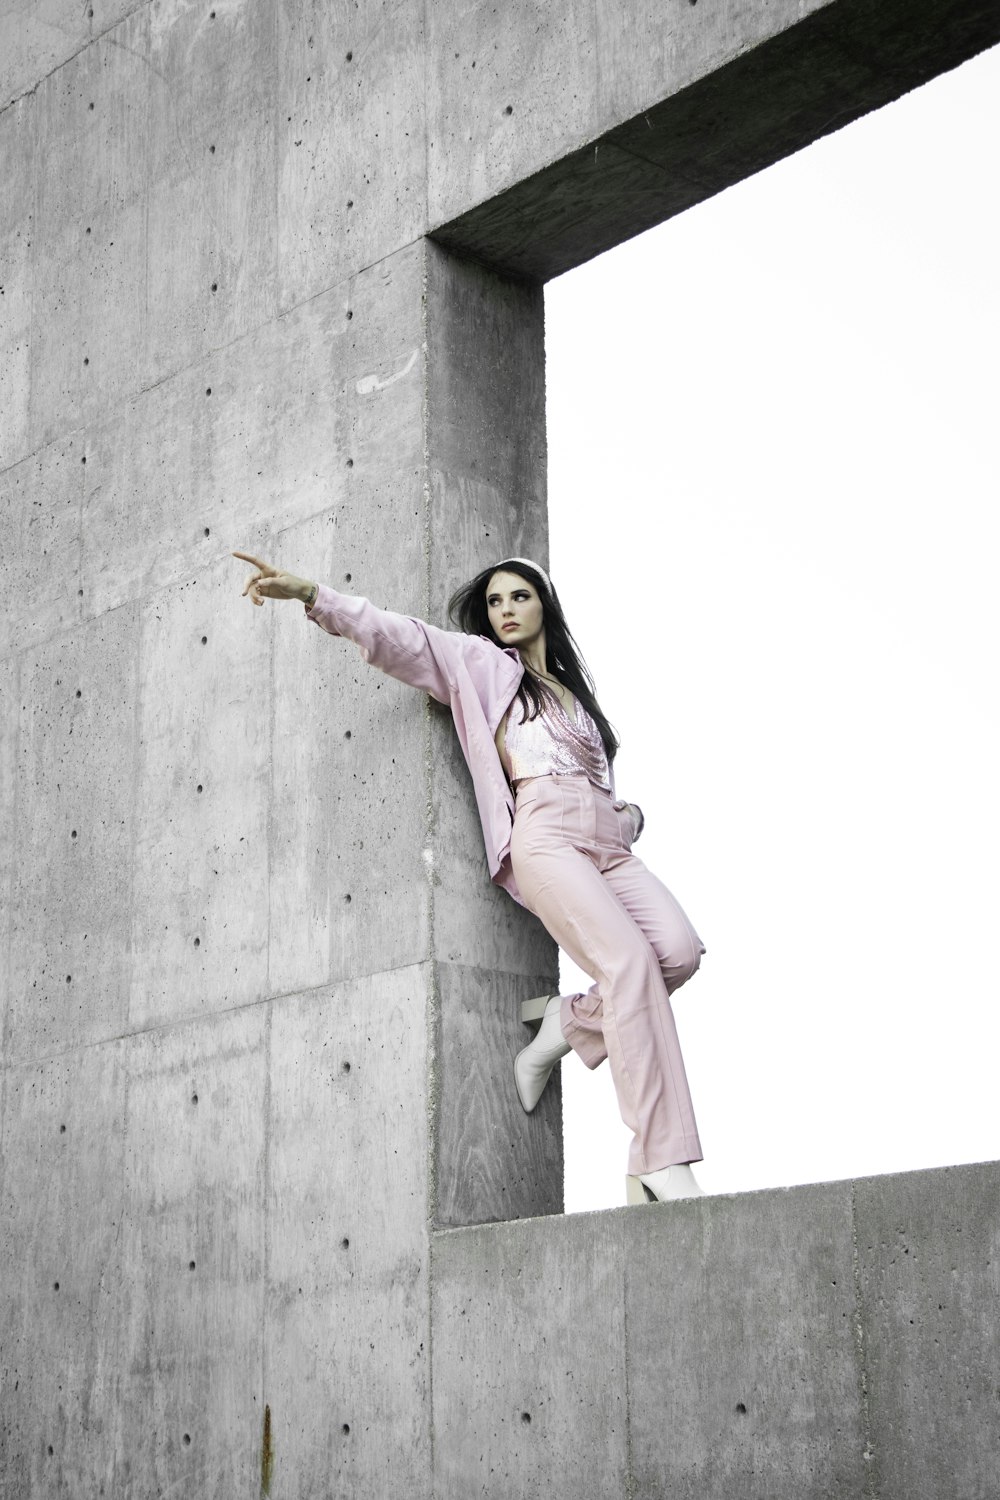 회색 콘크리트 벽에 서 있는 분홍색 코트를 입은 여자